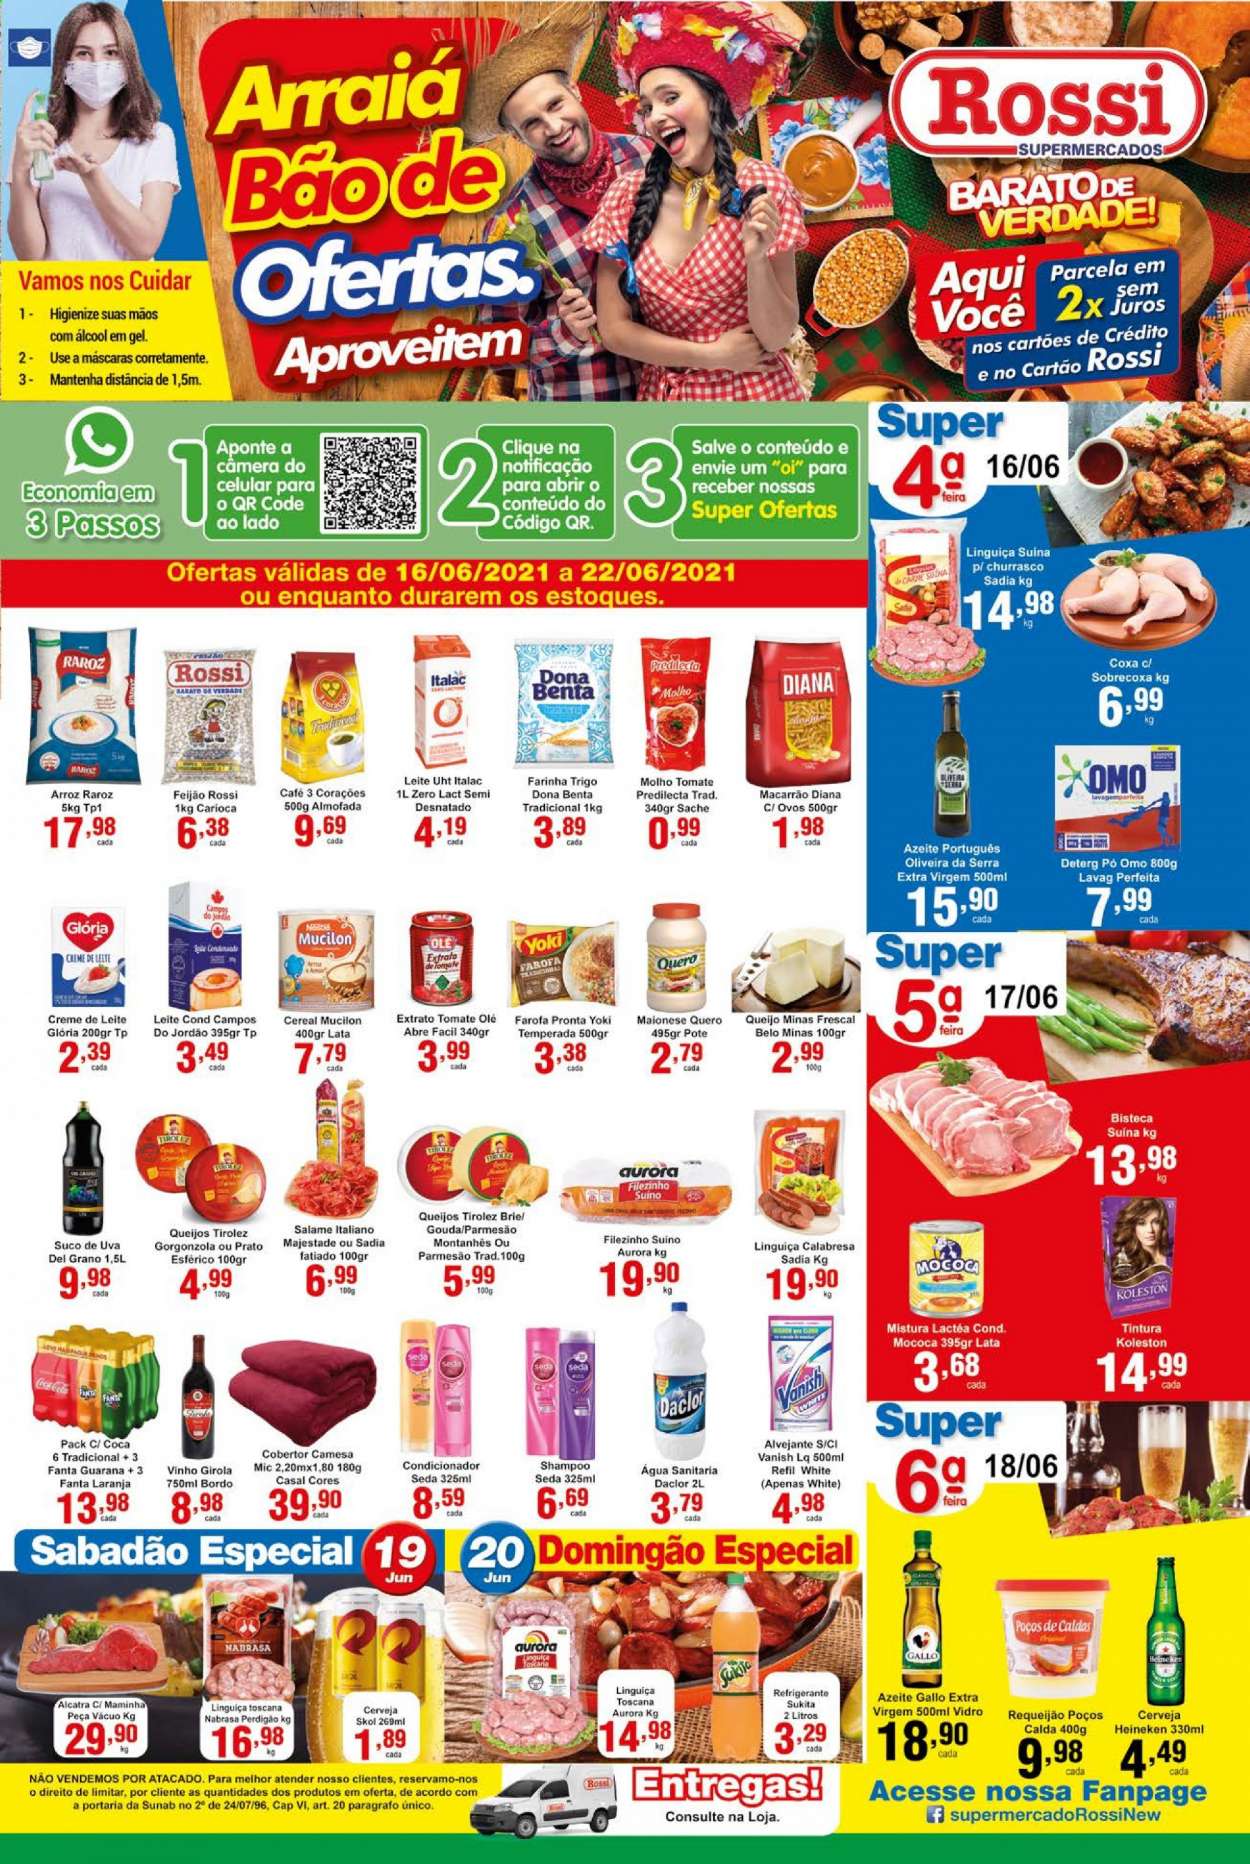 Encarte Rossi Supermercados  - 16.06.2021 - 22.06.2021.